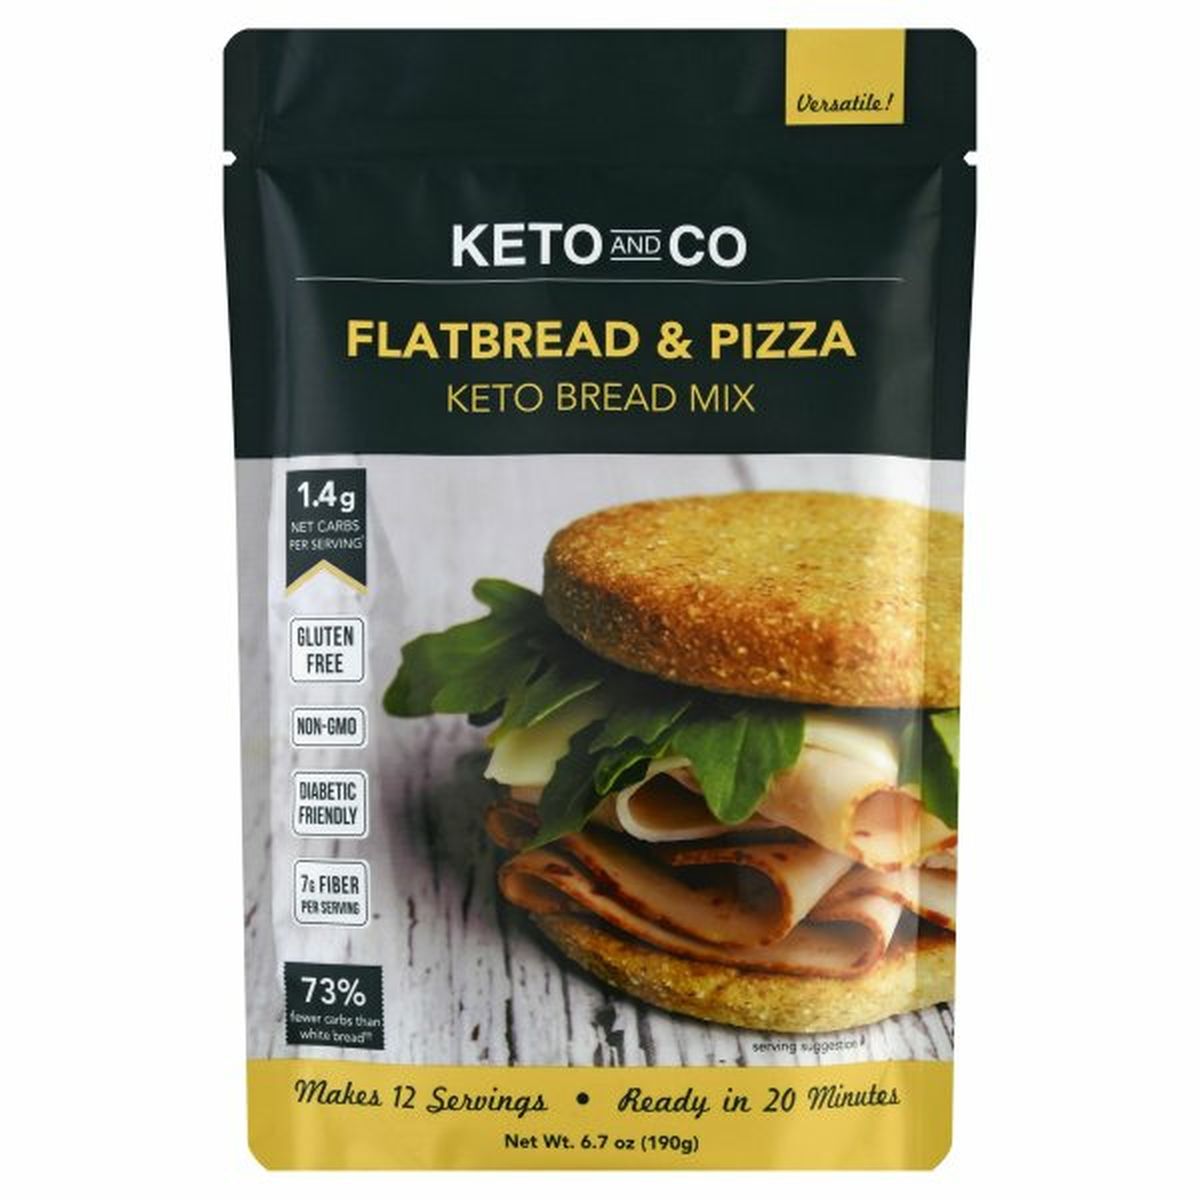 Calories in Keto And Co Keto Bread Mix, Flatbread & Pizza